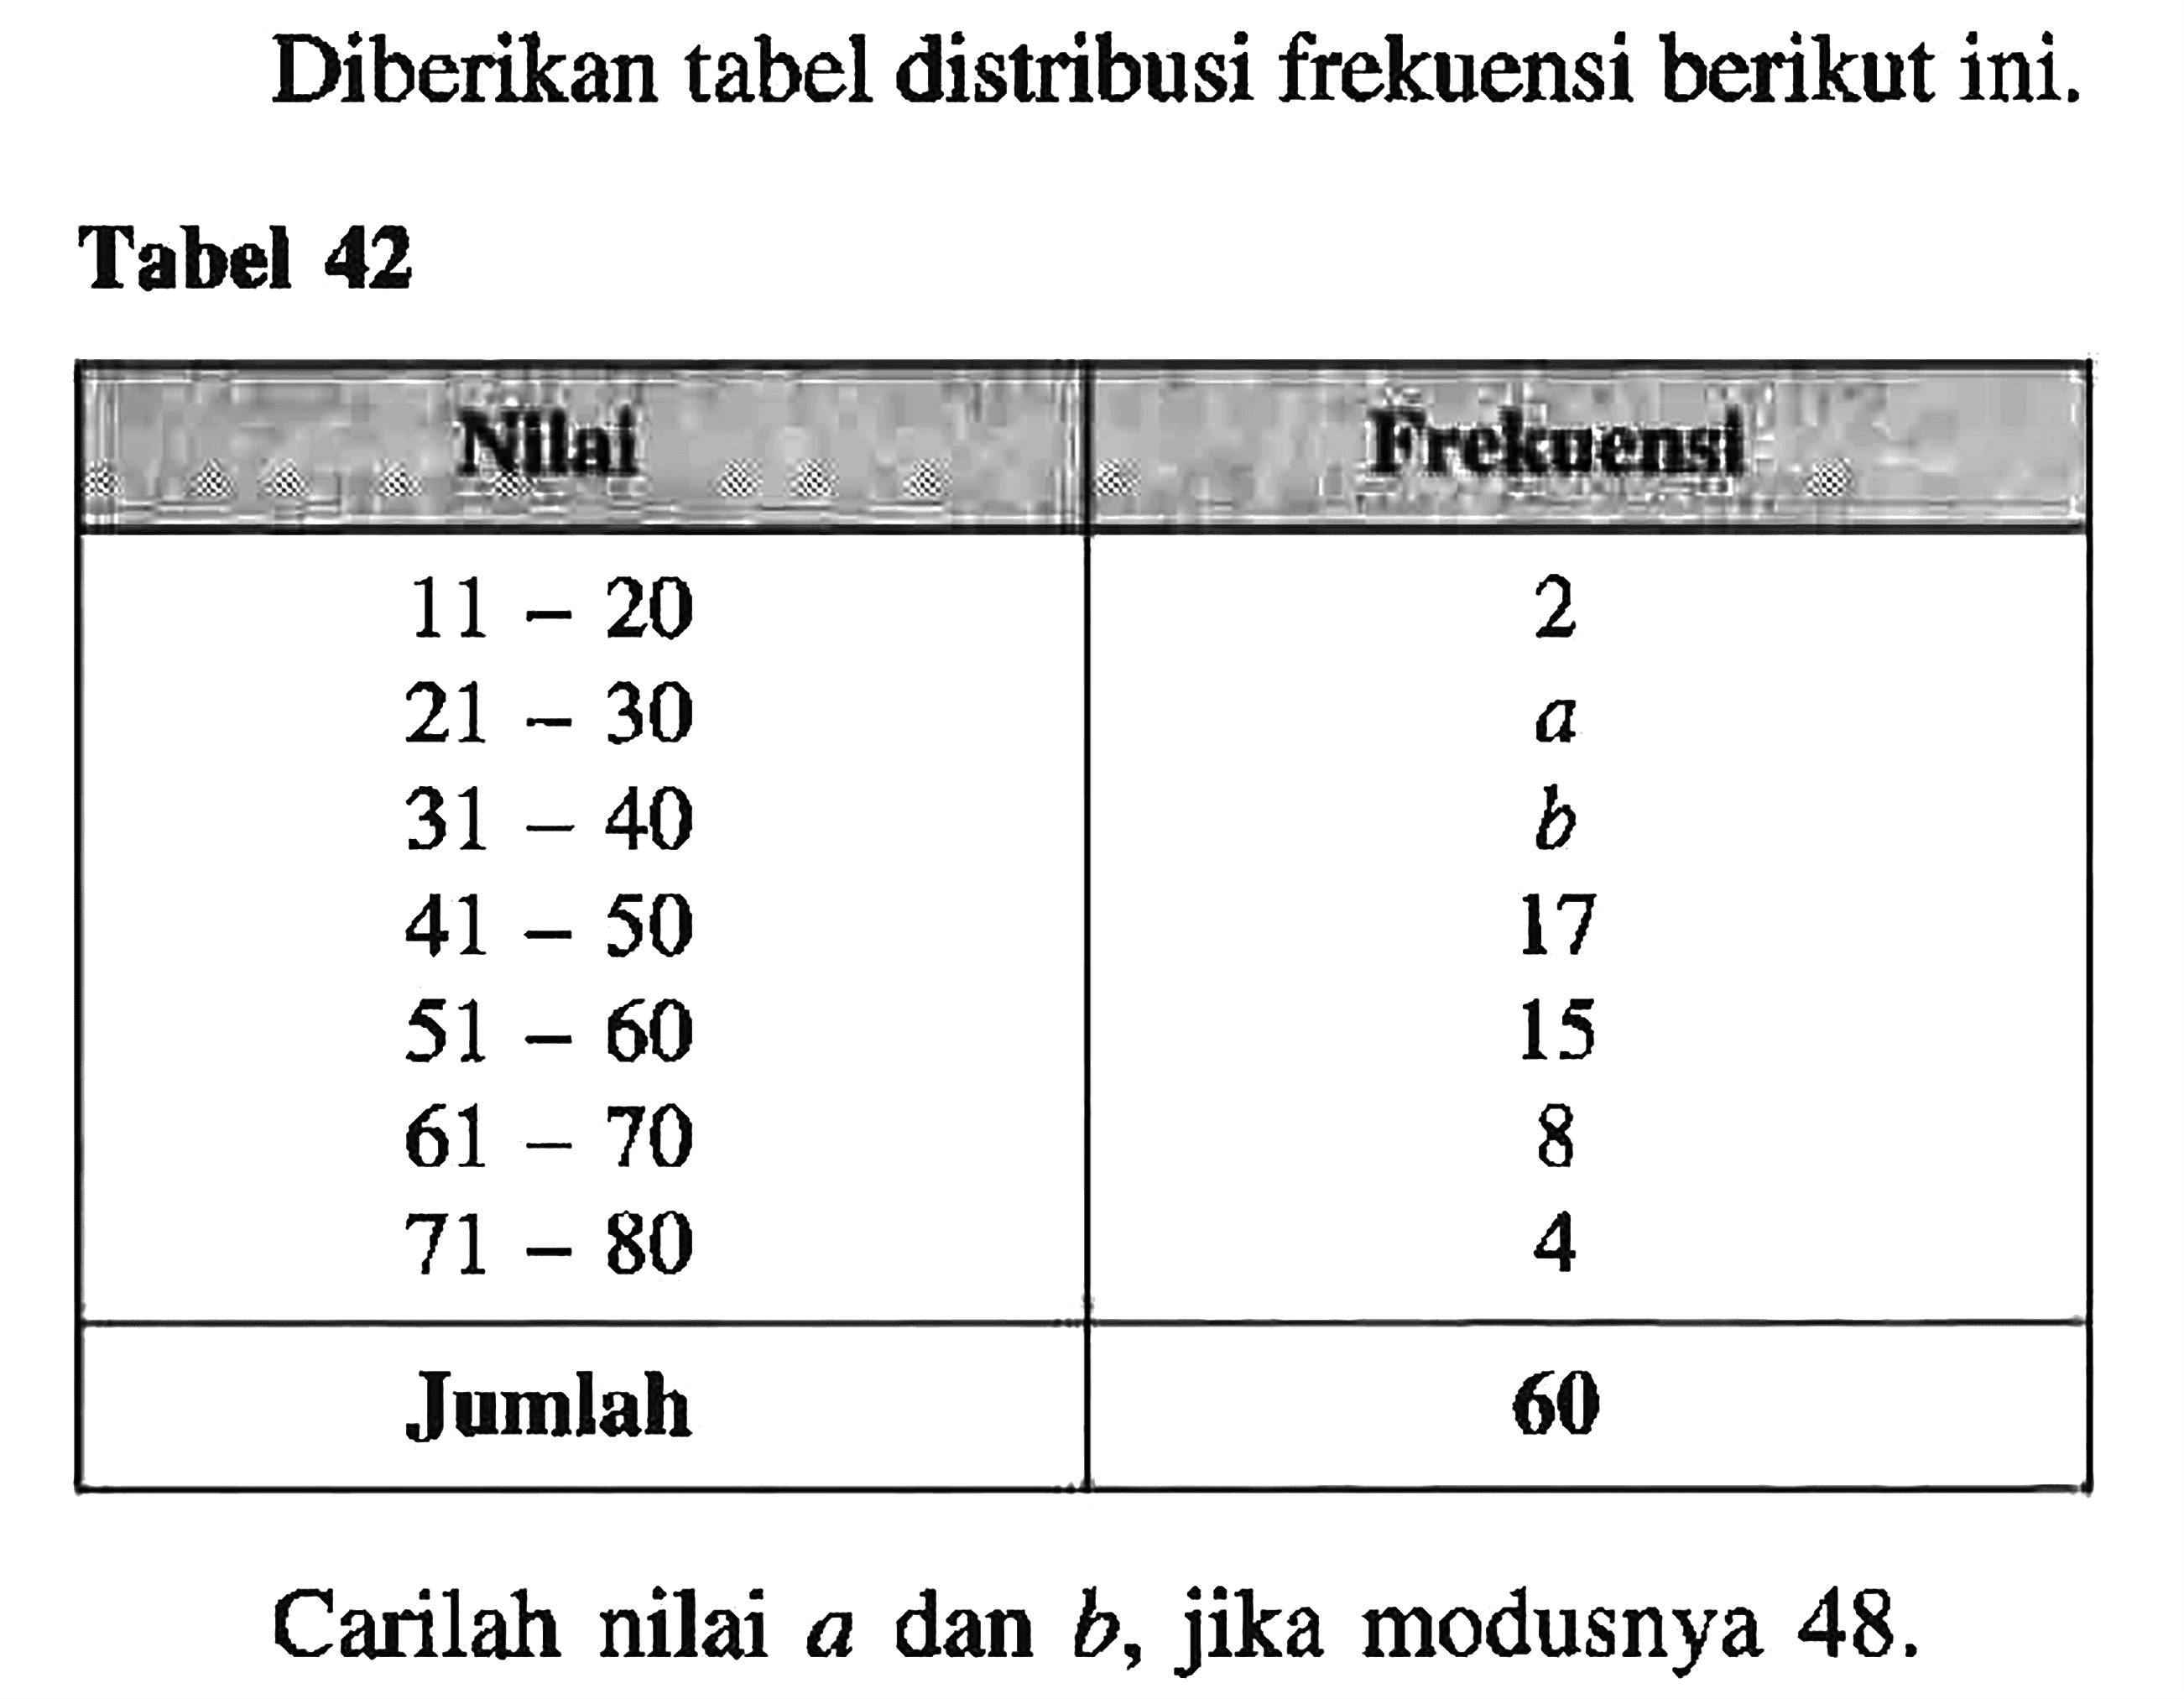 Diberikan tabel distribusi frekuensi berikut ini. Tabel 42 Nilai Frekuensi 11-20 2 21-30 a 31-40 b 41-50 17 51-60 15 61-70 8 71-80 4 Jumlah 60 Carilah nilai a dan b, jika modusnya 48.